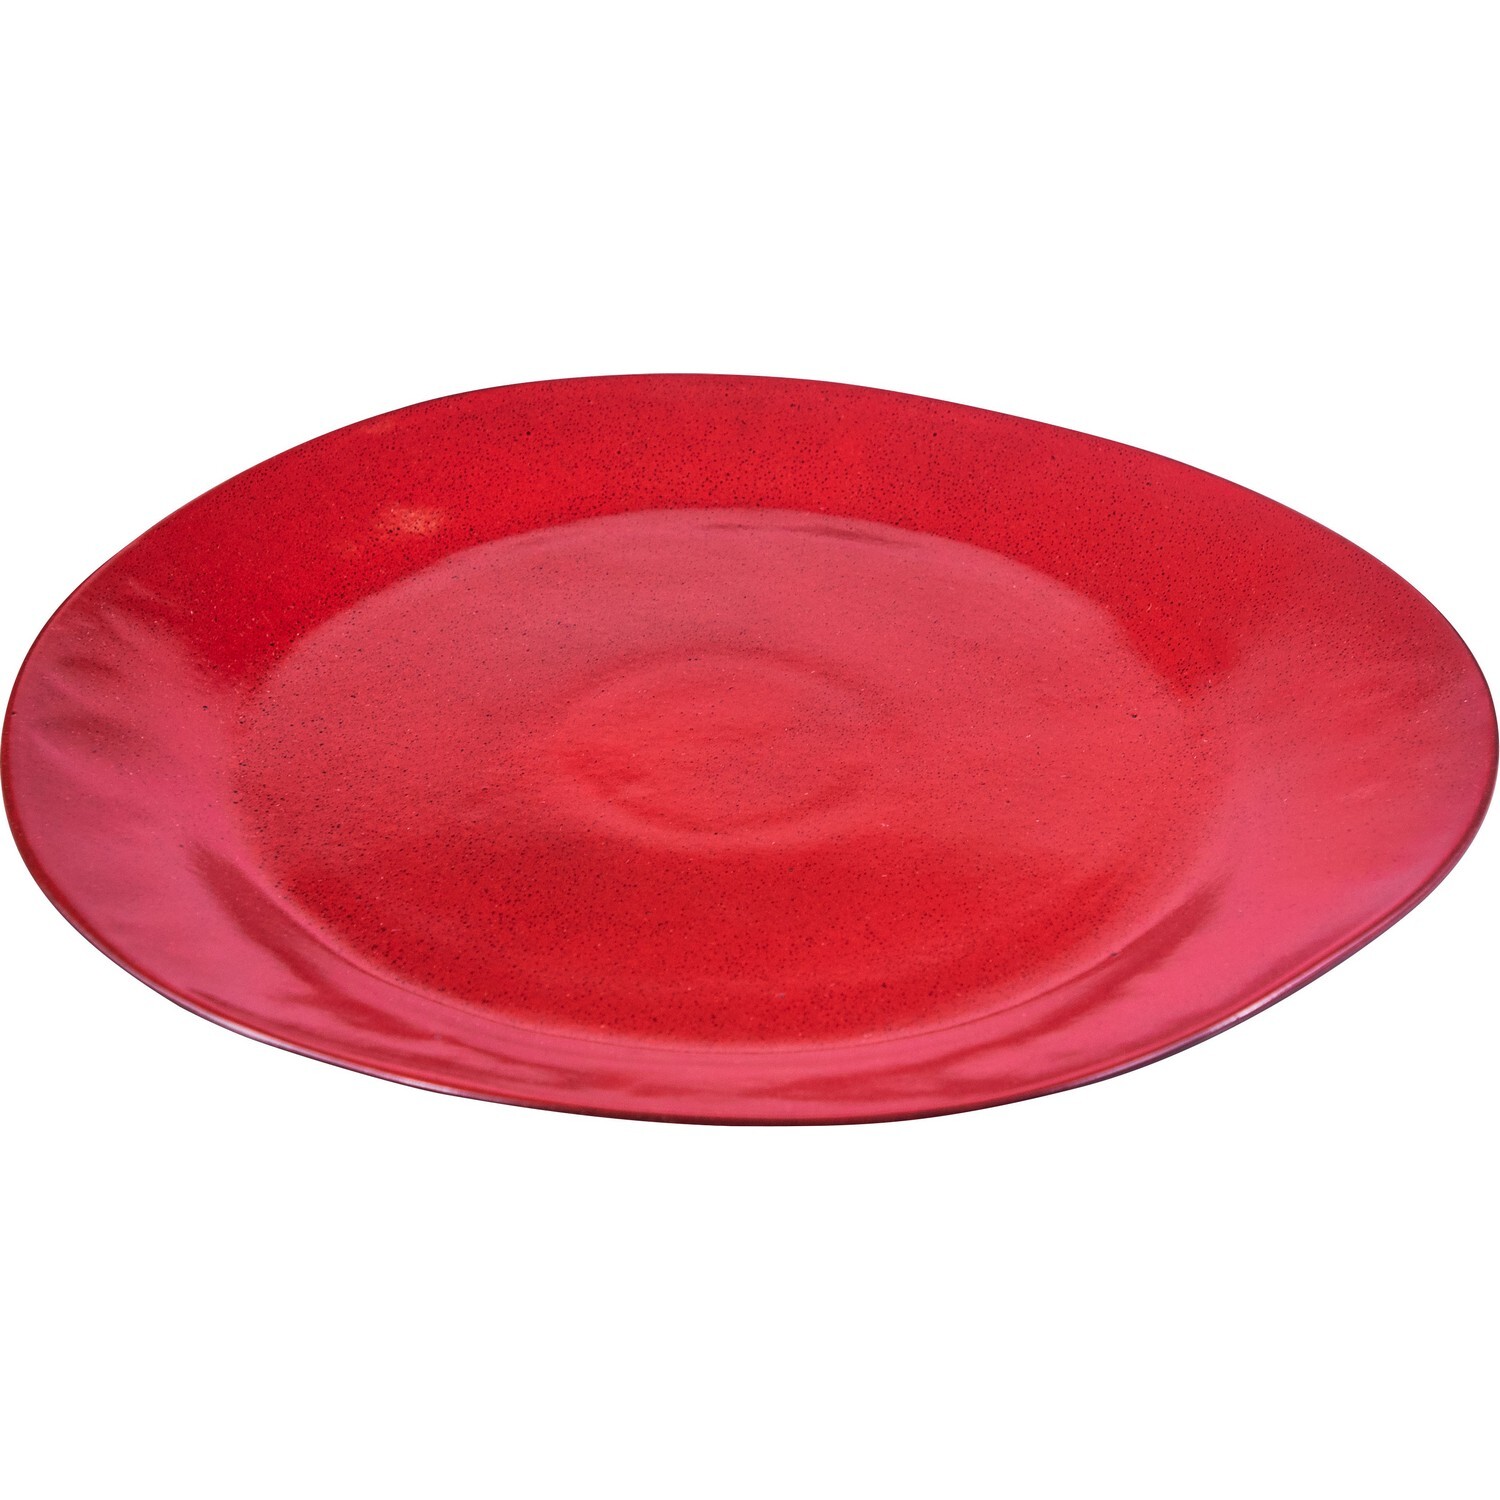 Тарелка борисовская. Борисовская керамика тарелки с листьями. Красный фарфор. Блюдо Vabene, фарфор красный, черный. Тарелка Млечный путь овал.